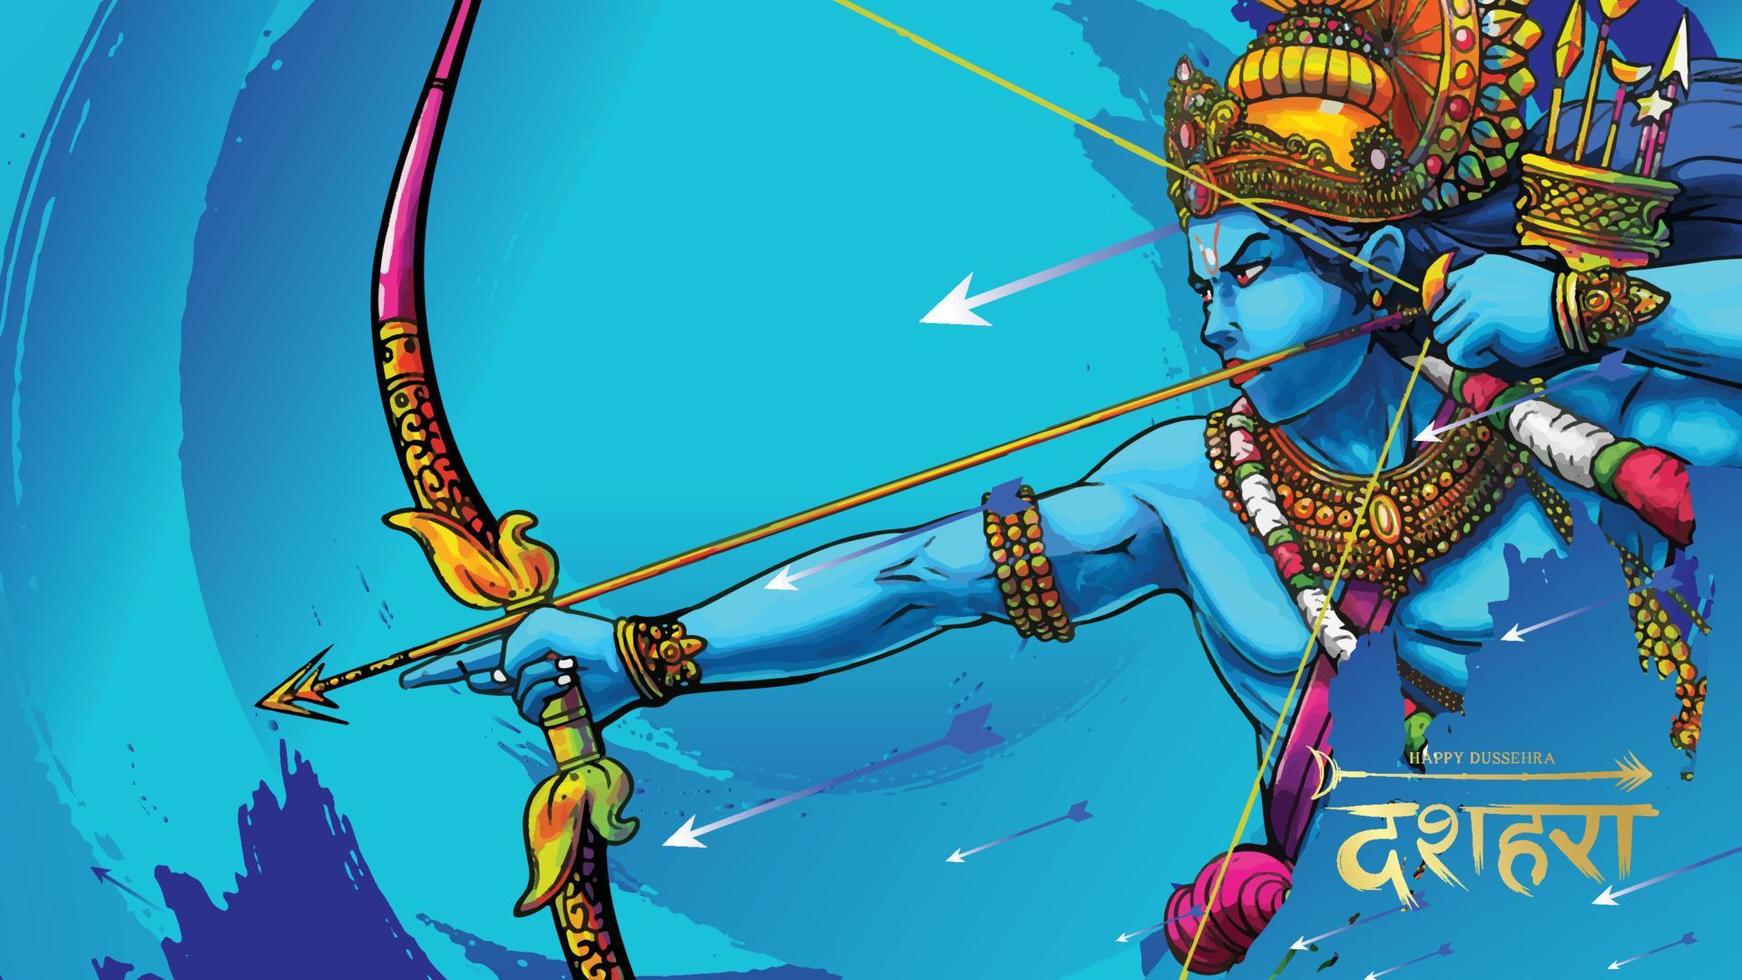 Lord rama uccide ravana nel felice festival del poster di dussehra navratri dell'india. traduzione dussehra vettore